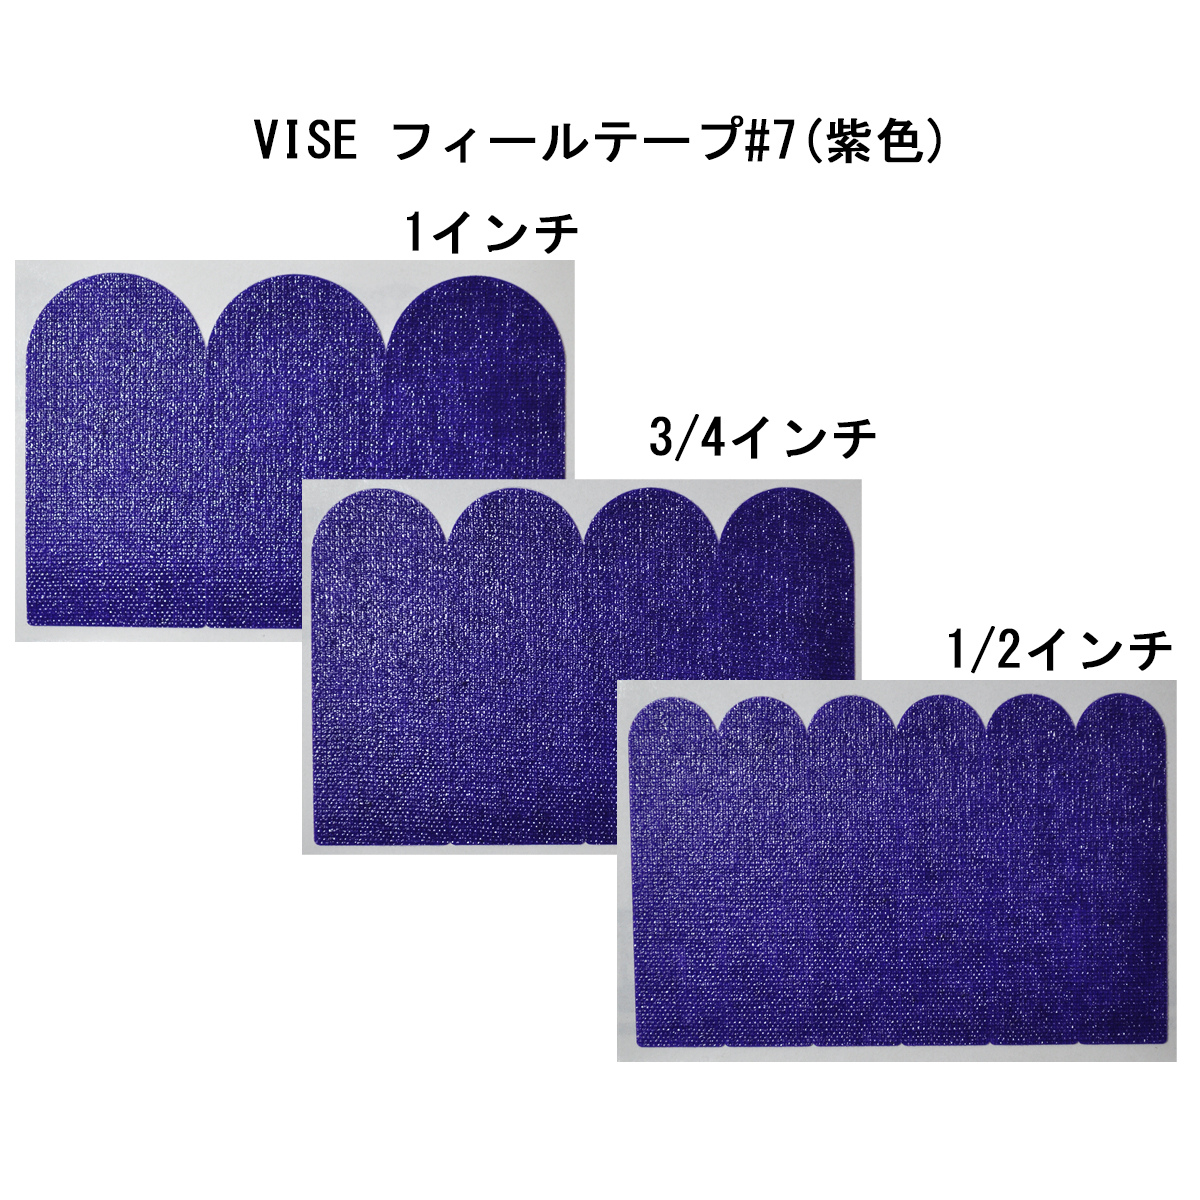 【12袋セット】VISE フィールテープ#7(紫色) - ウインドウを閉じる